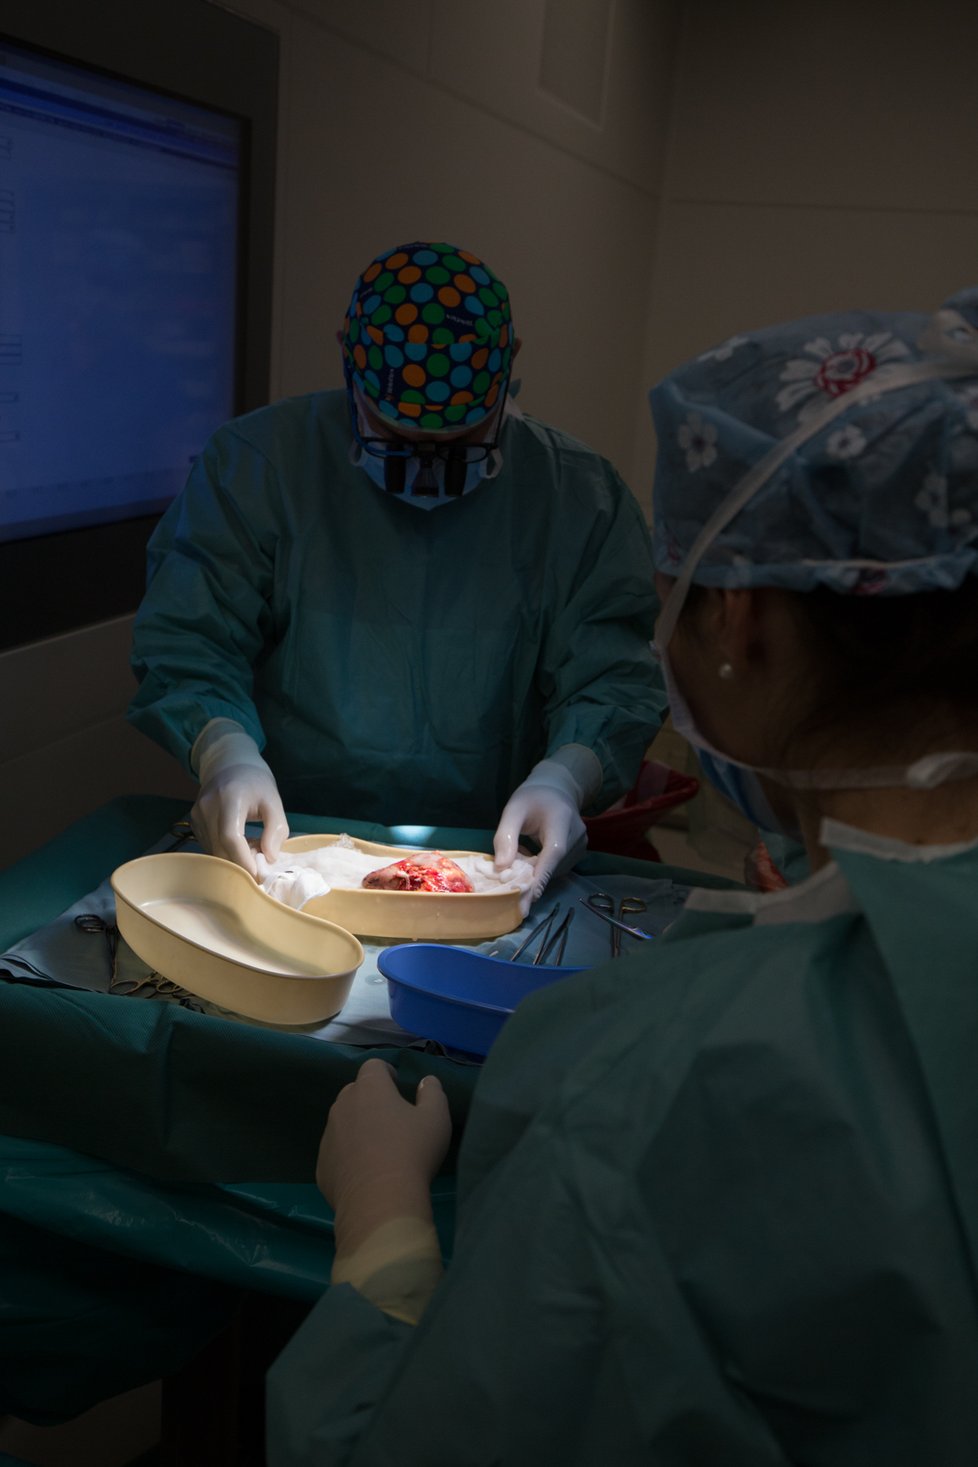 Čeští lékaři poprvé provedli párovou výměnu ledvin s Izraelem, dali tak šanci na lepší život šesti pacientům.